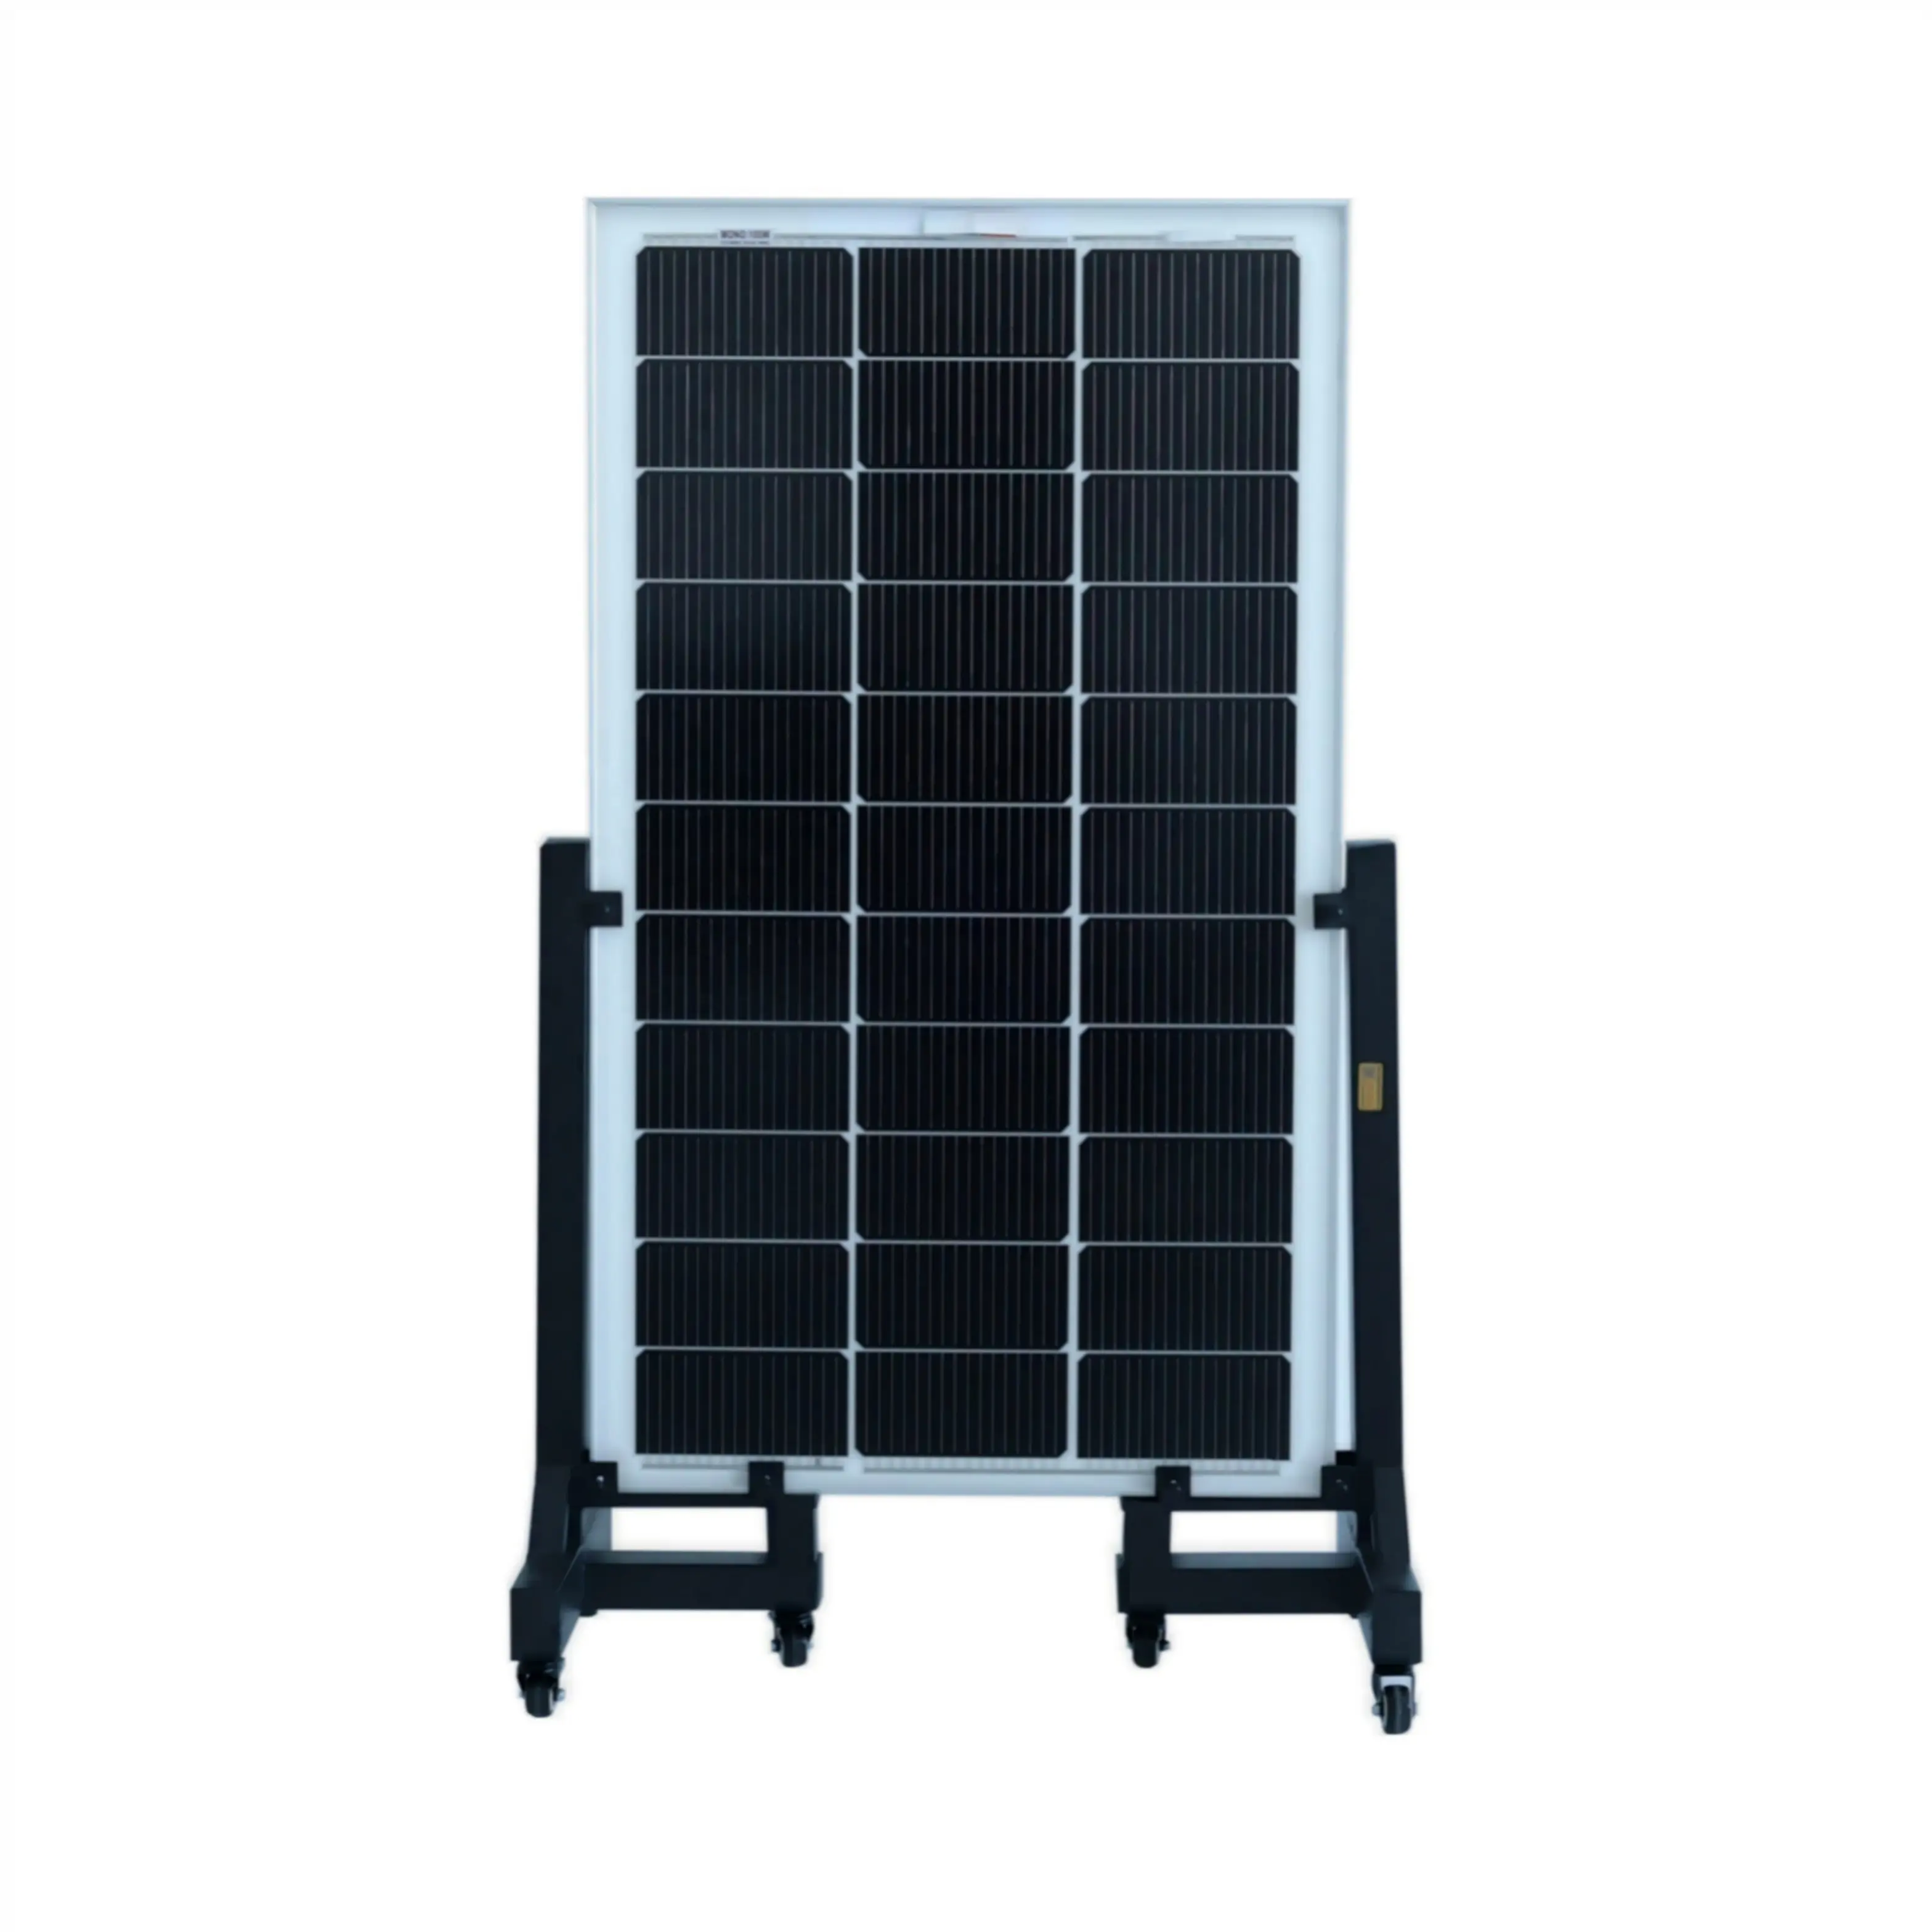 グレードの安いPVモジュールモノラルソーラーパネル18v100w 150w 170w200w太陽電池太陽光発電屋根システム